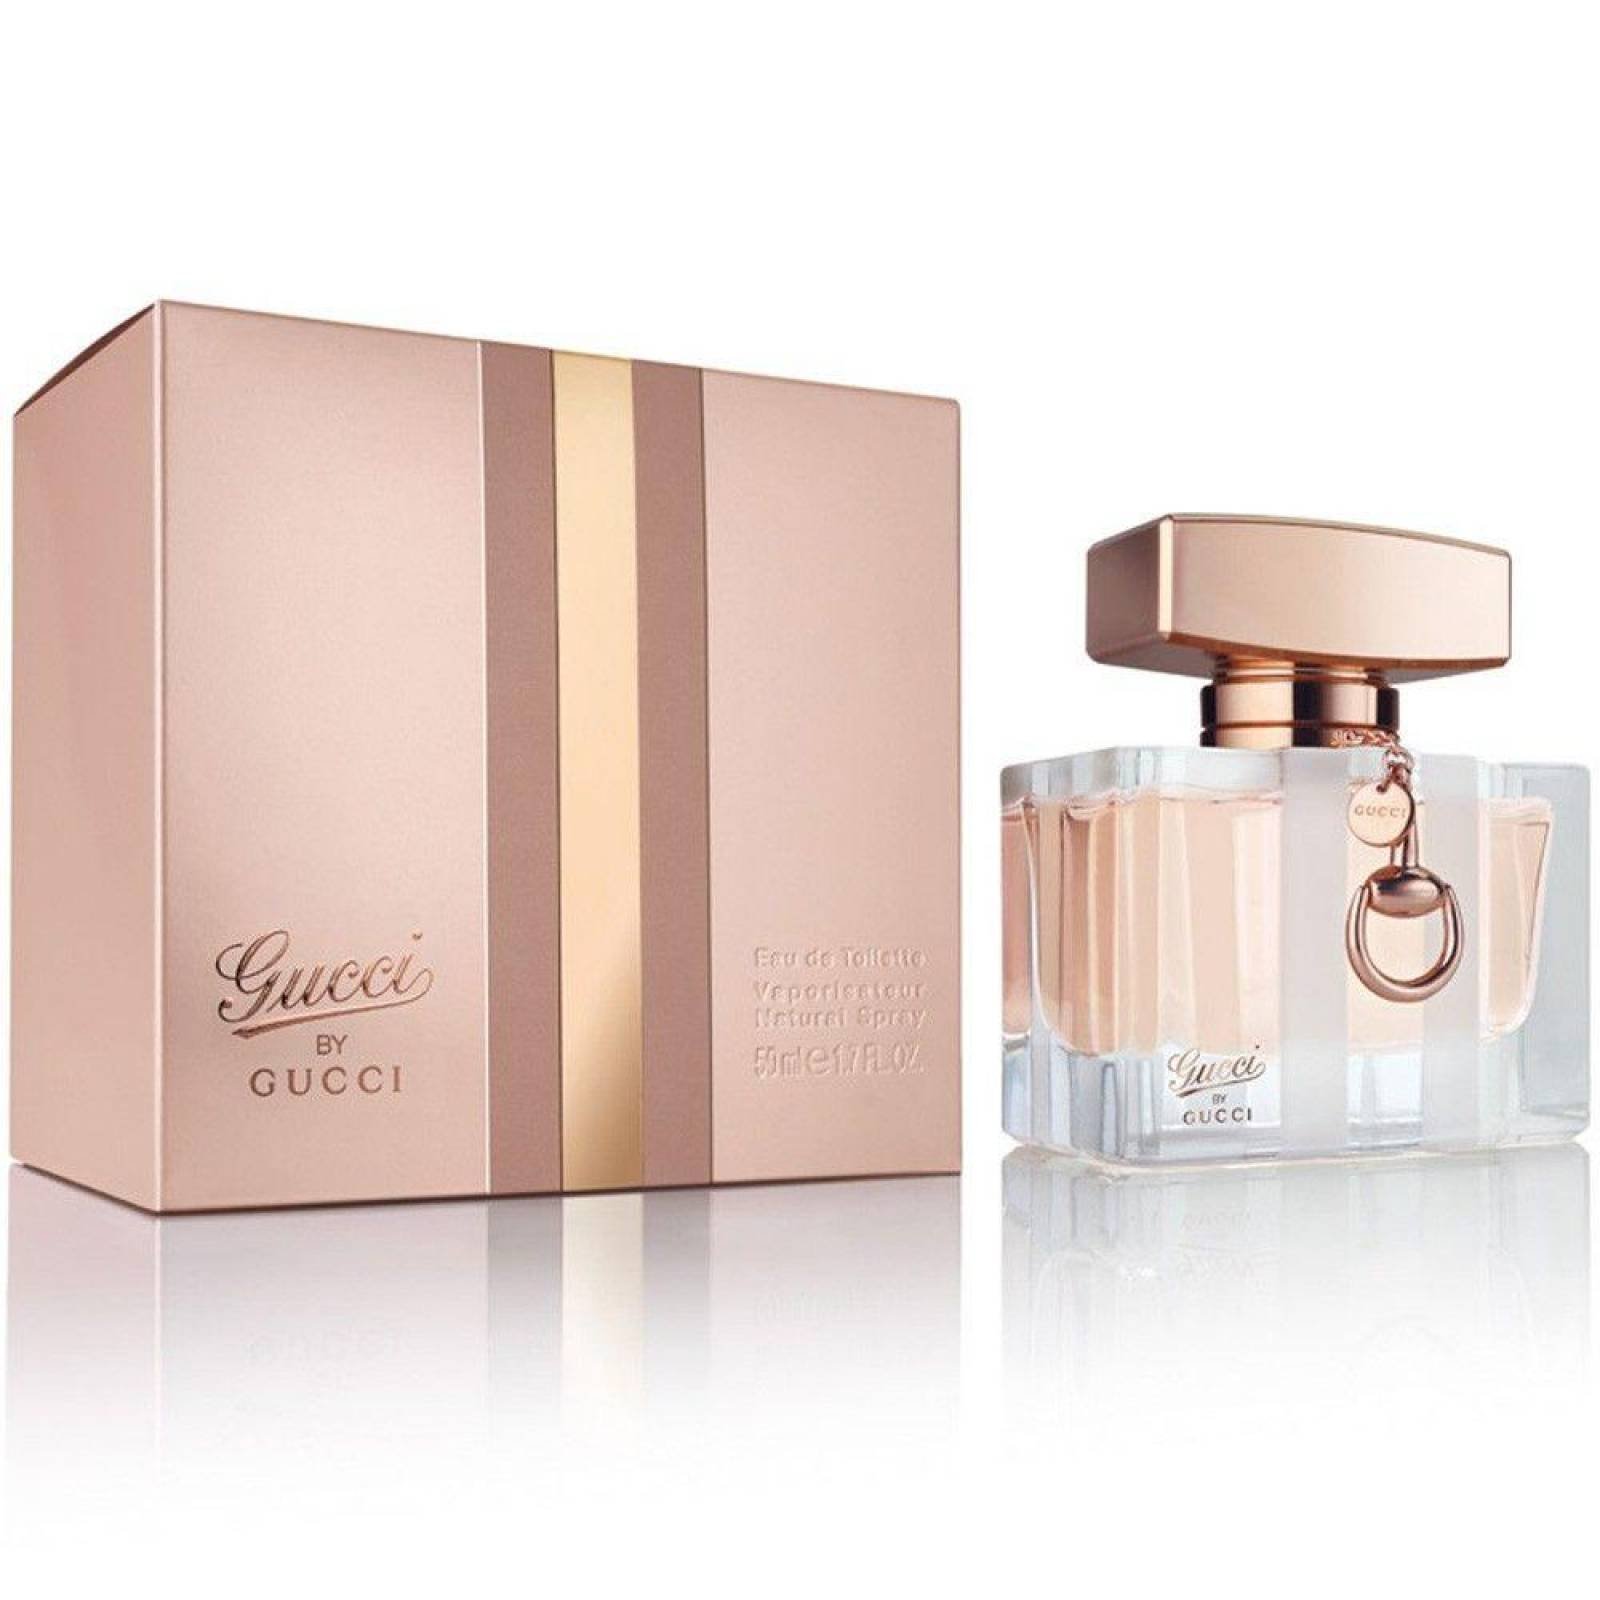 Perfume Gucci by Gucci de Gucci EDT 50 ml